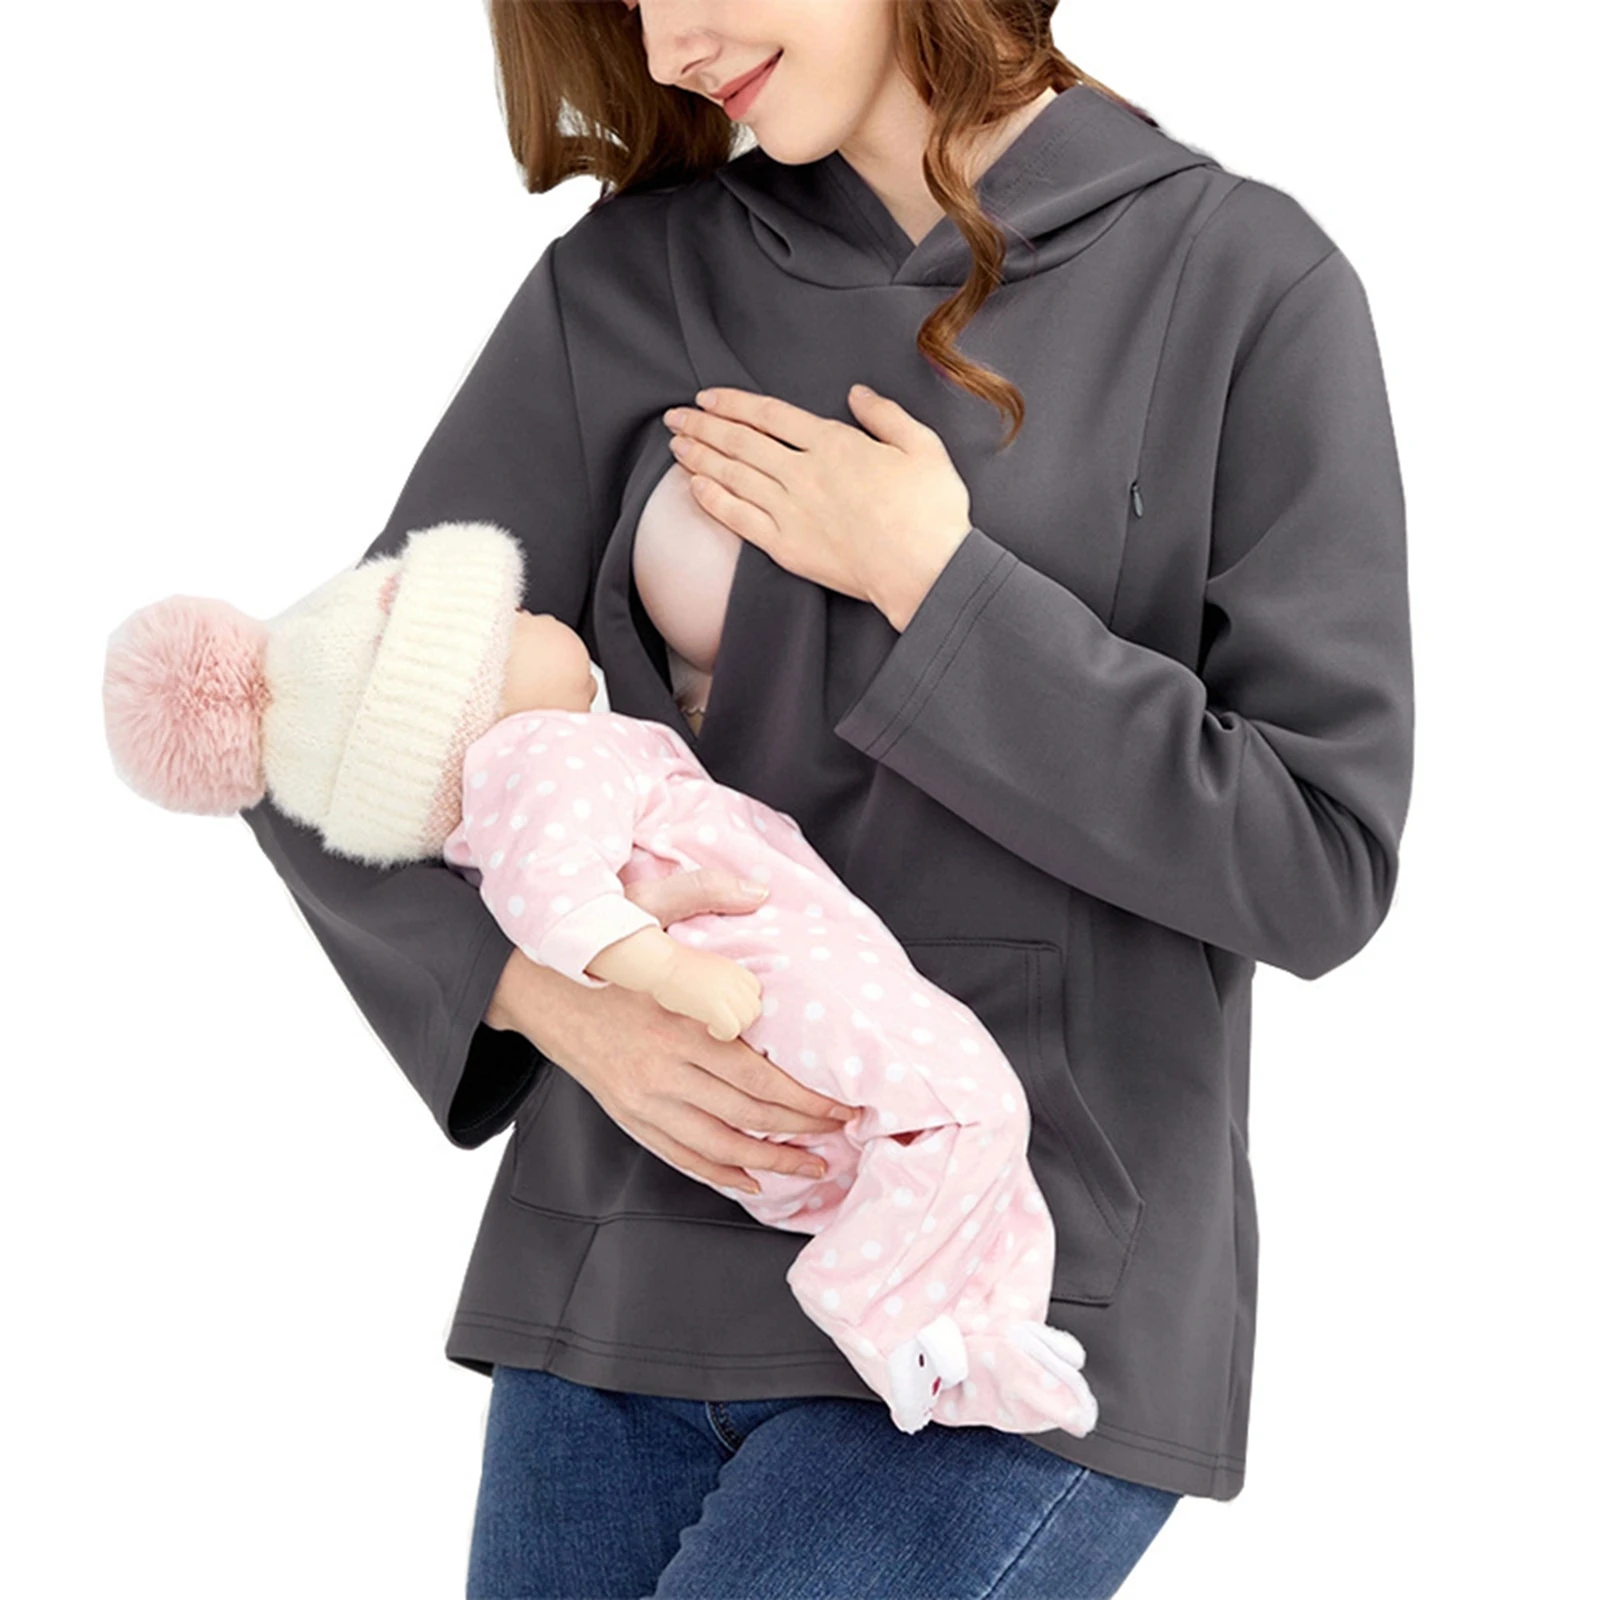 Women's Maternity Nursing Hoodies Solid Color Hooded Long Sleeve Breastfeeding Pullovers Pregnancy Sweatshirts